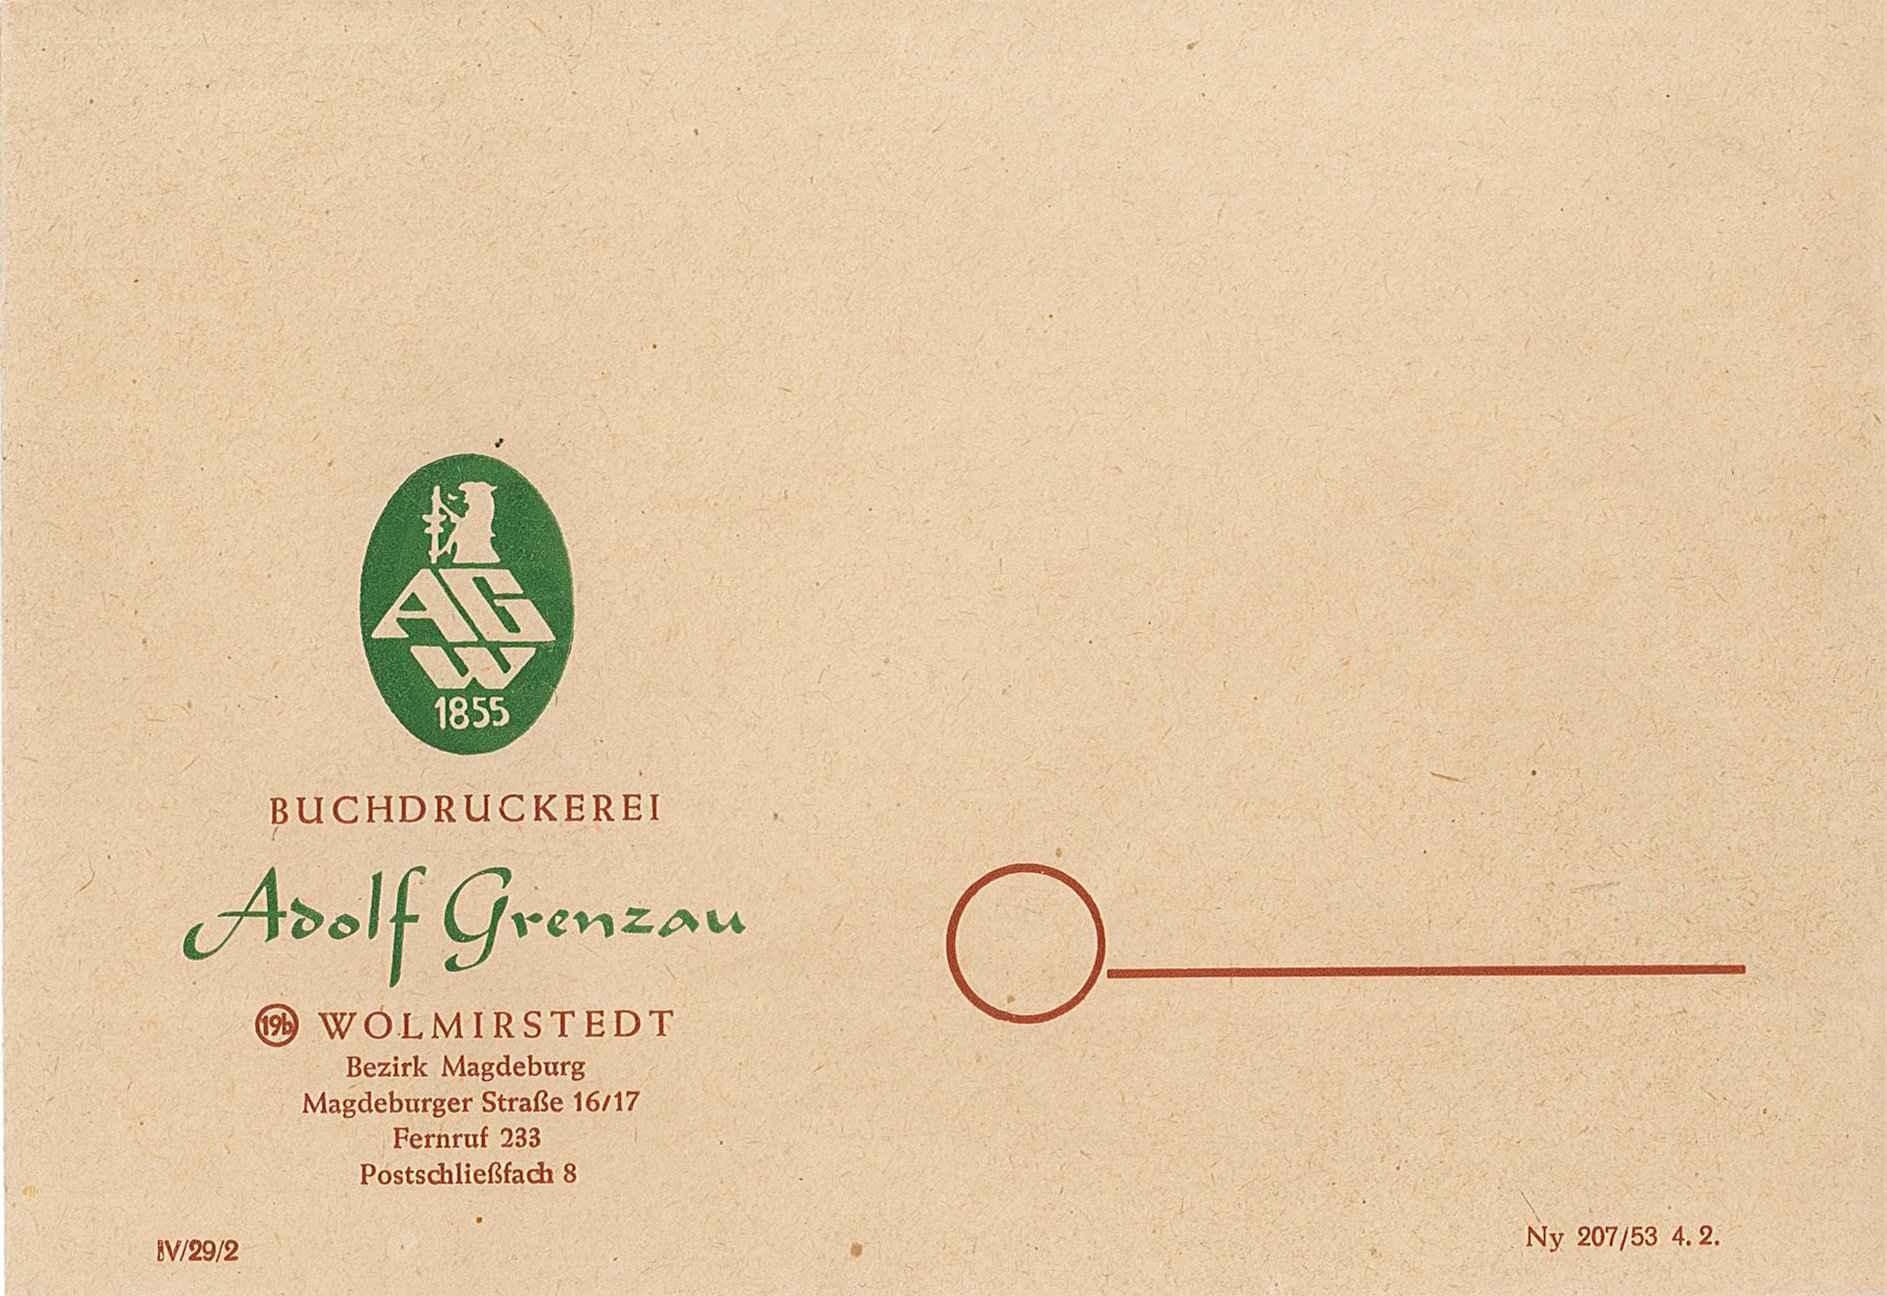 Firmen-Briefumschlaf der Buchdruckerei Adolf Grenzau, 1929(?) (Museum Wolmirstedt RR-F)